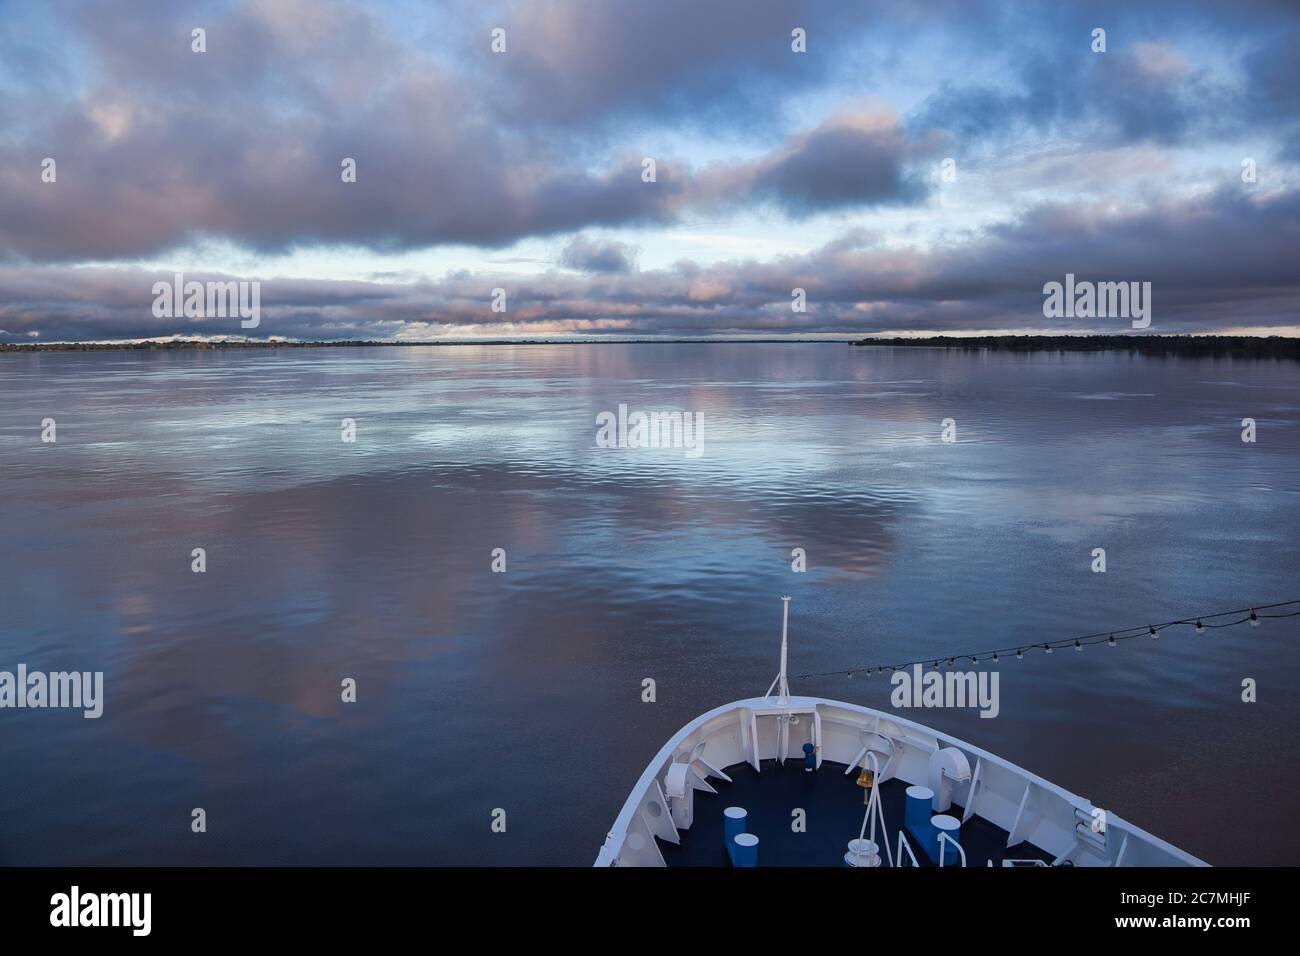 Vista dalle fibbie di una nave del fiume Amazzonia in una giornata molto tranquilla, con bei riflessi del cielo e delle nuvole nella superficie liscia dell'acqua Foto Stock